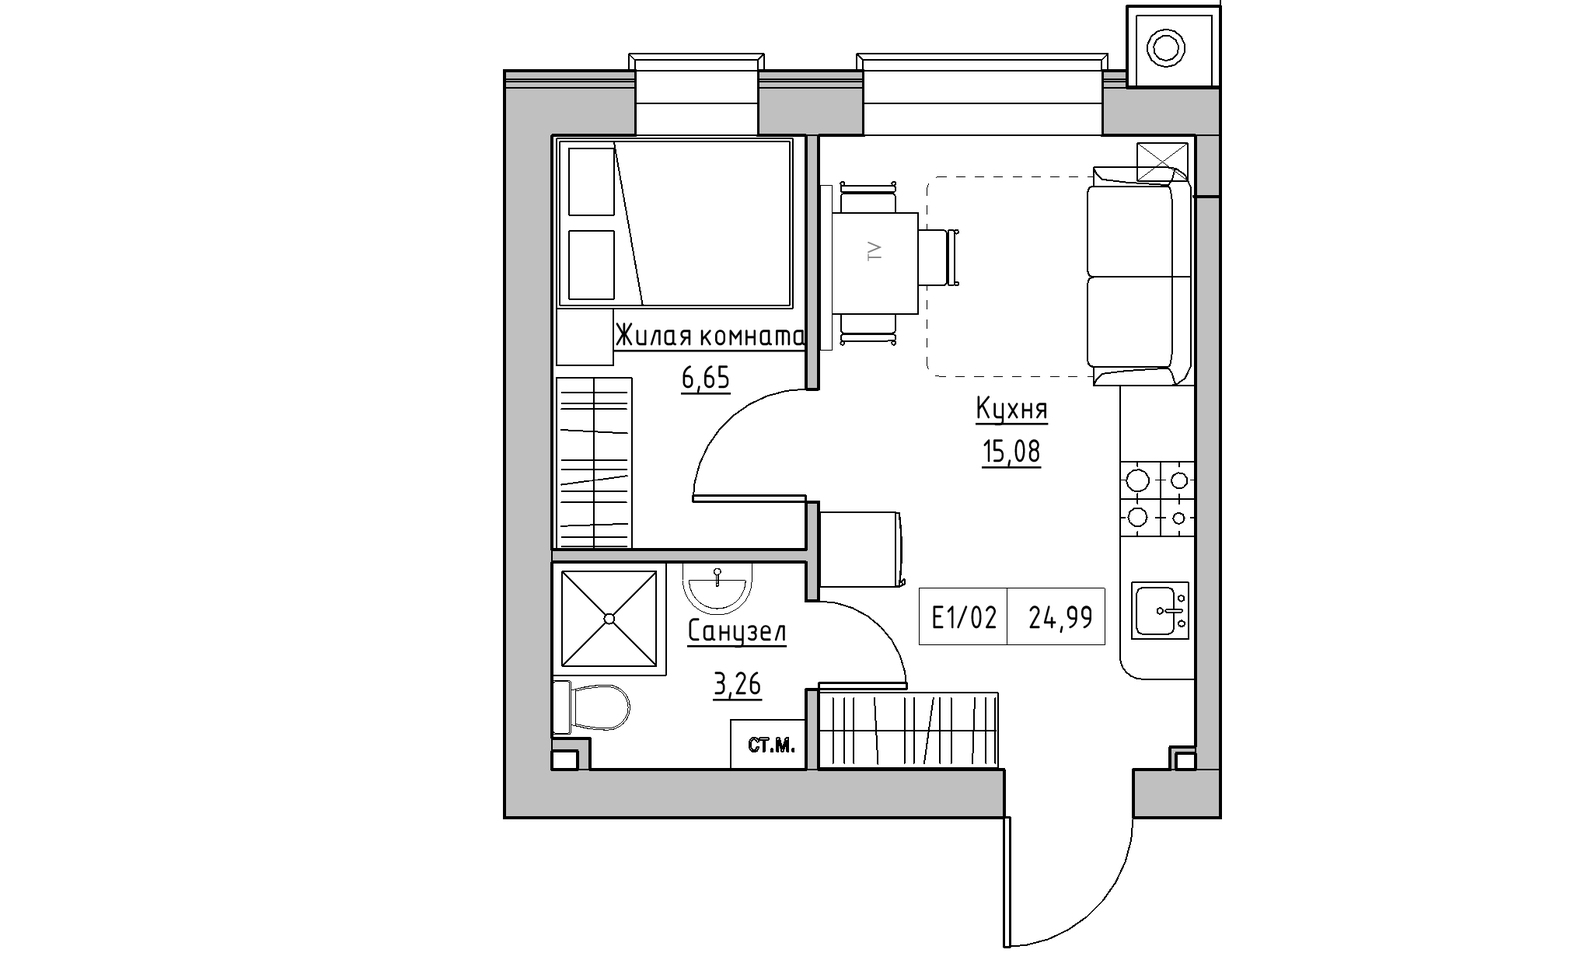 Планування 1-к квартира площею 24.99м2, KS-014-02/0004.